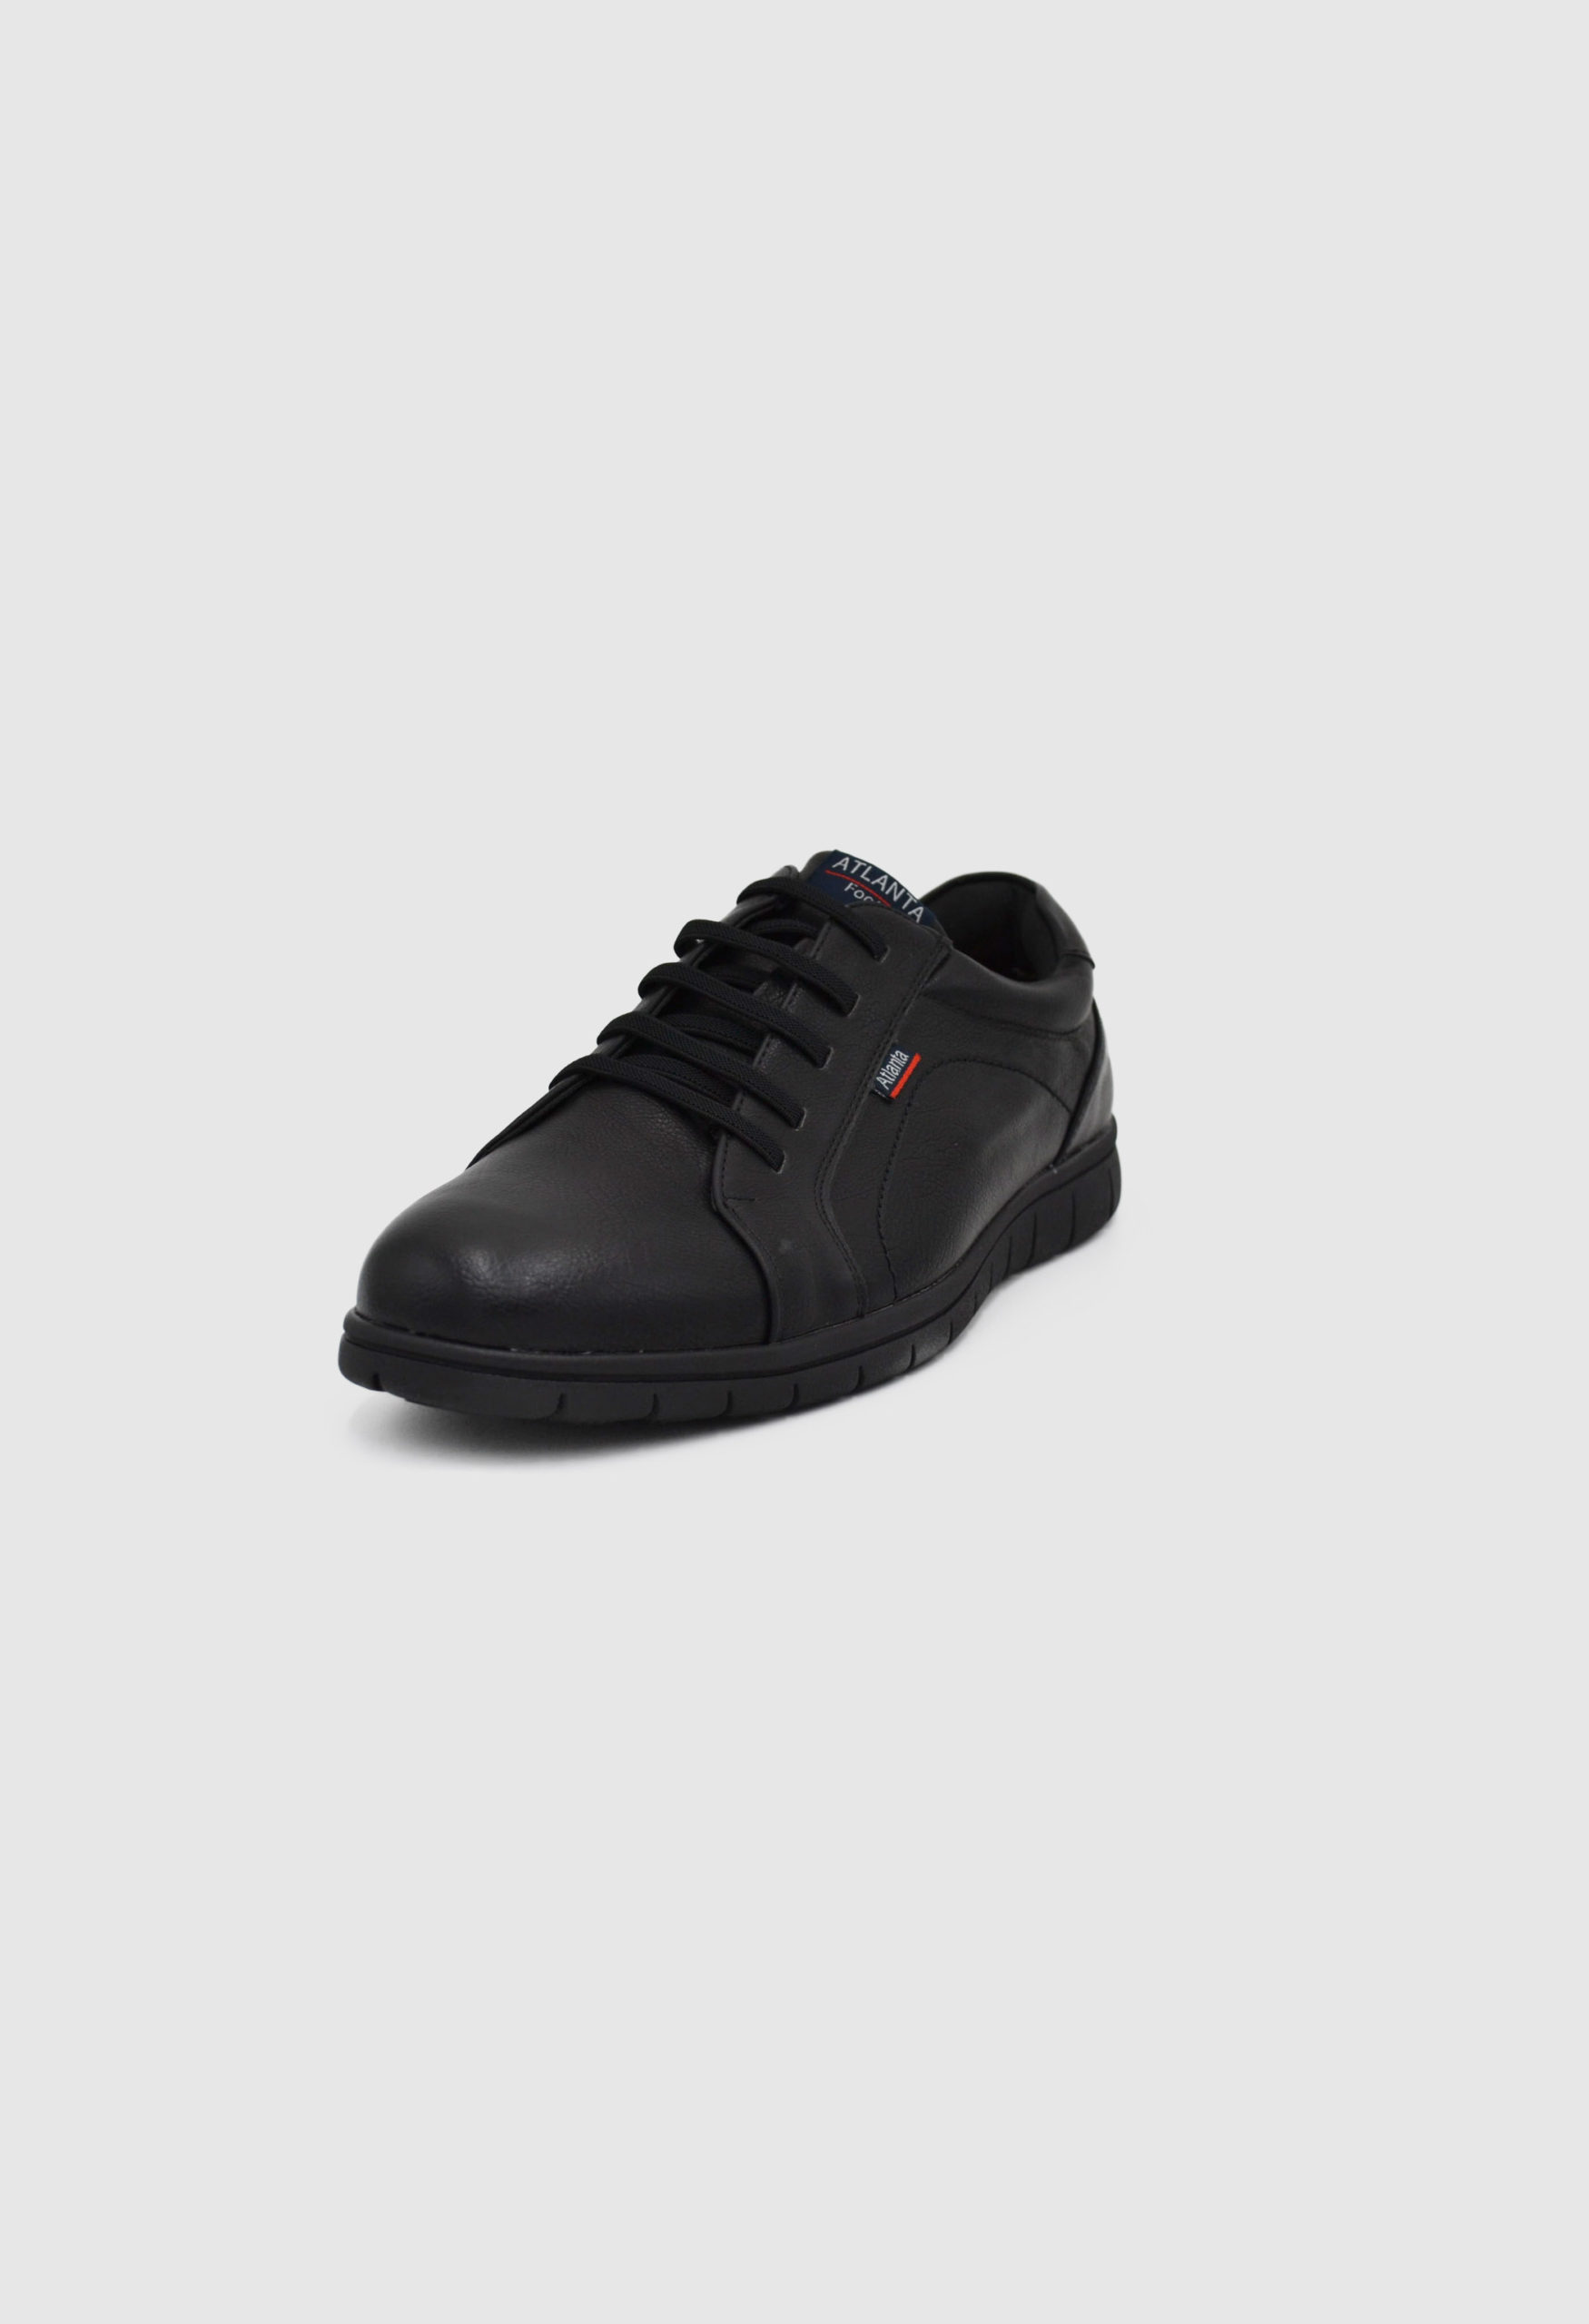 Ανδρικά Casual Παπούτσια Μαύρο / 2905-black OXFORDS & CASUAL joya.gr